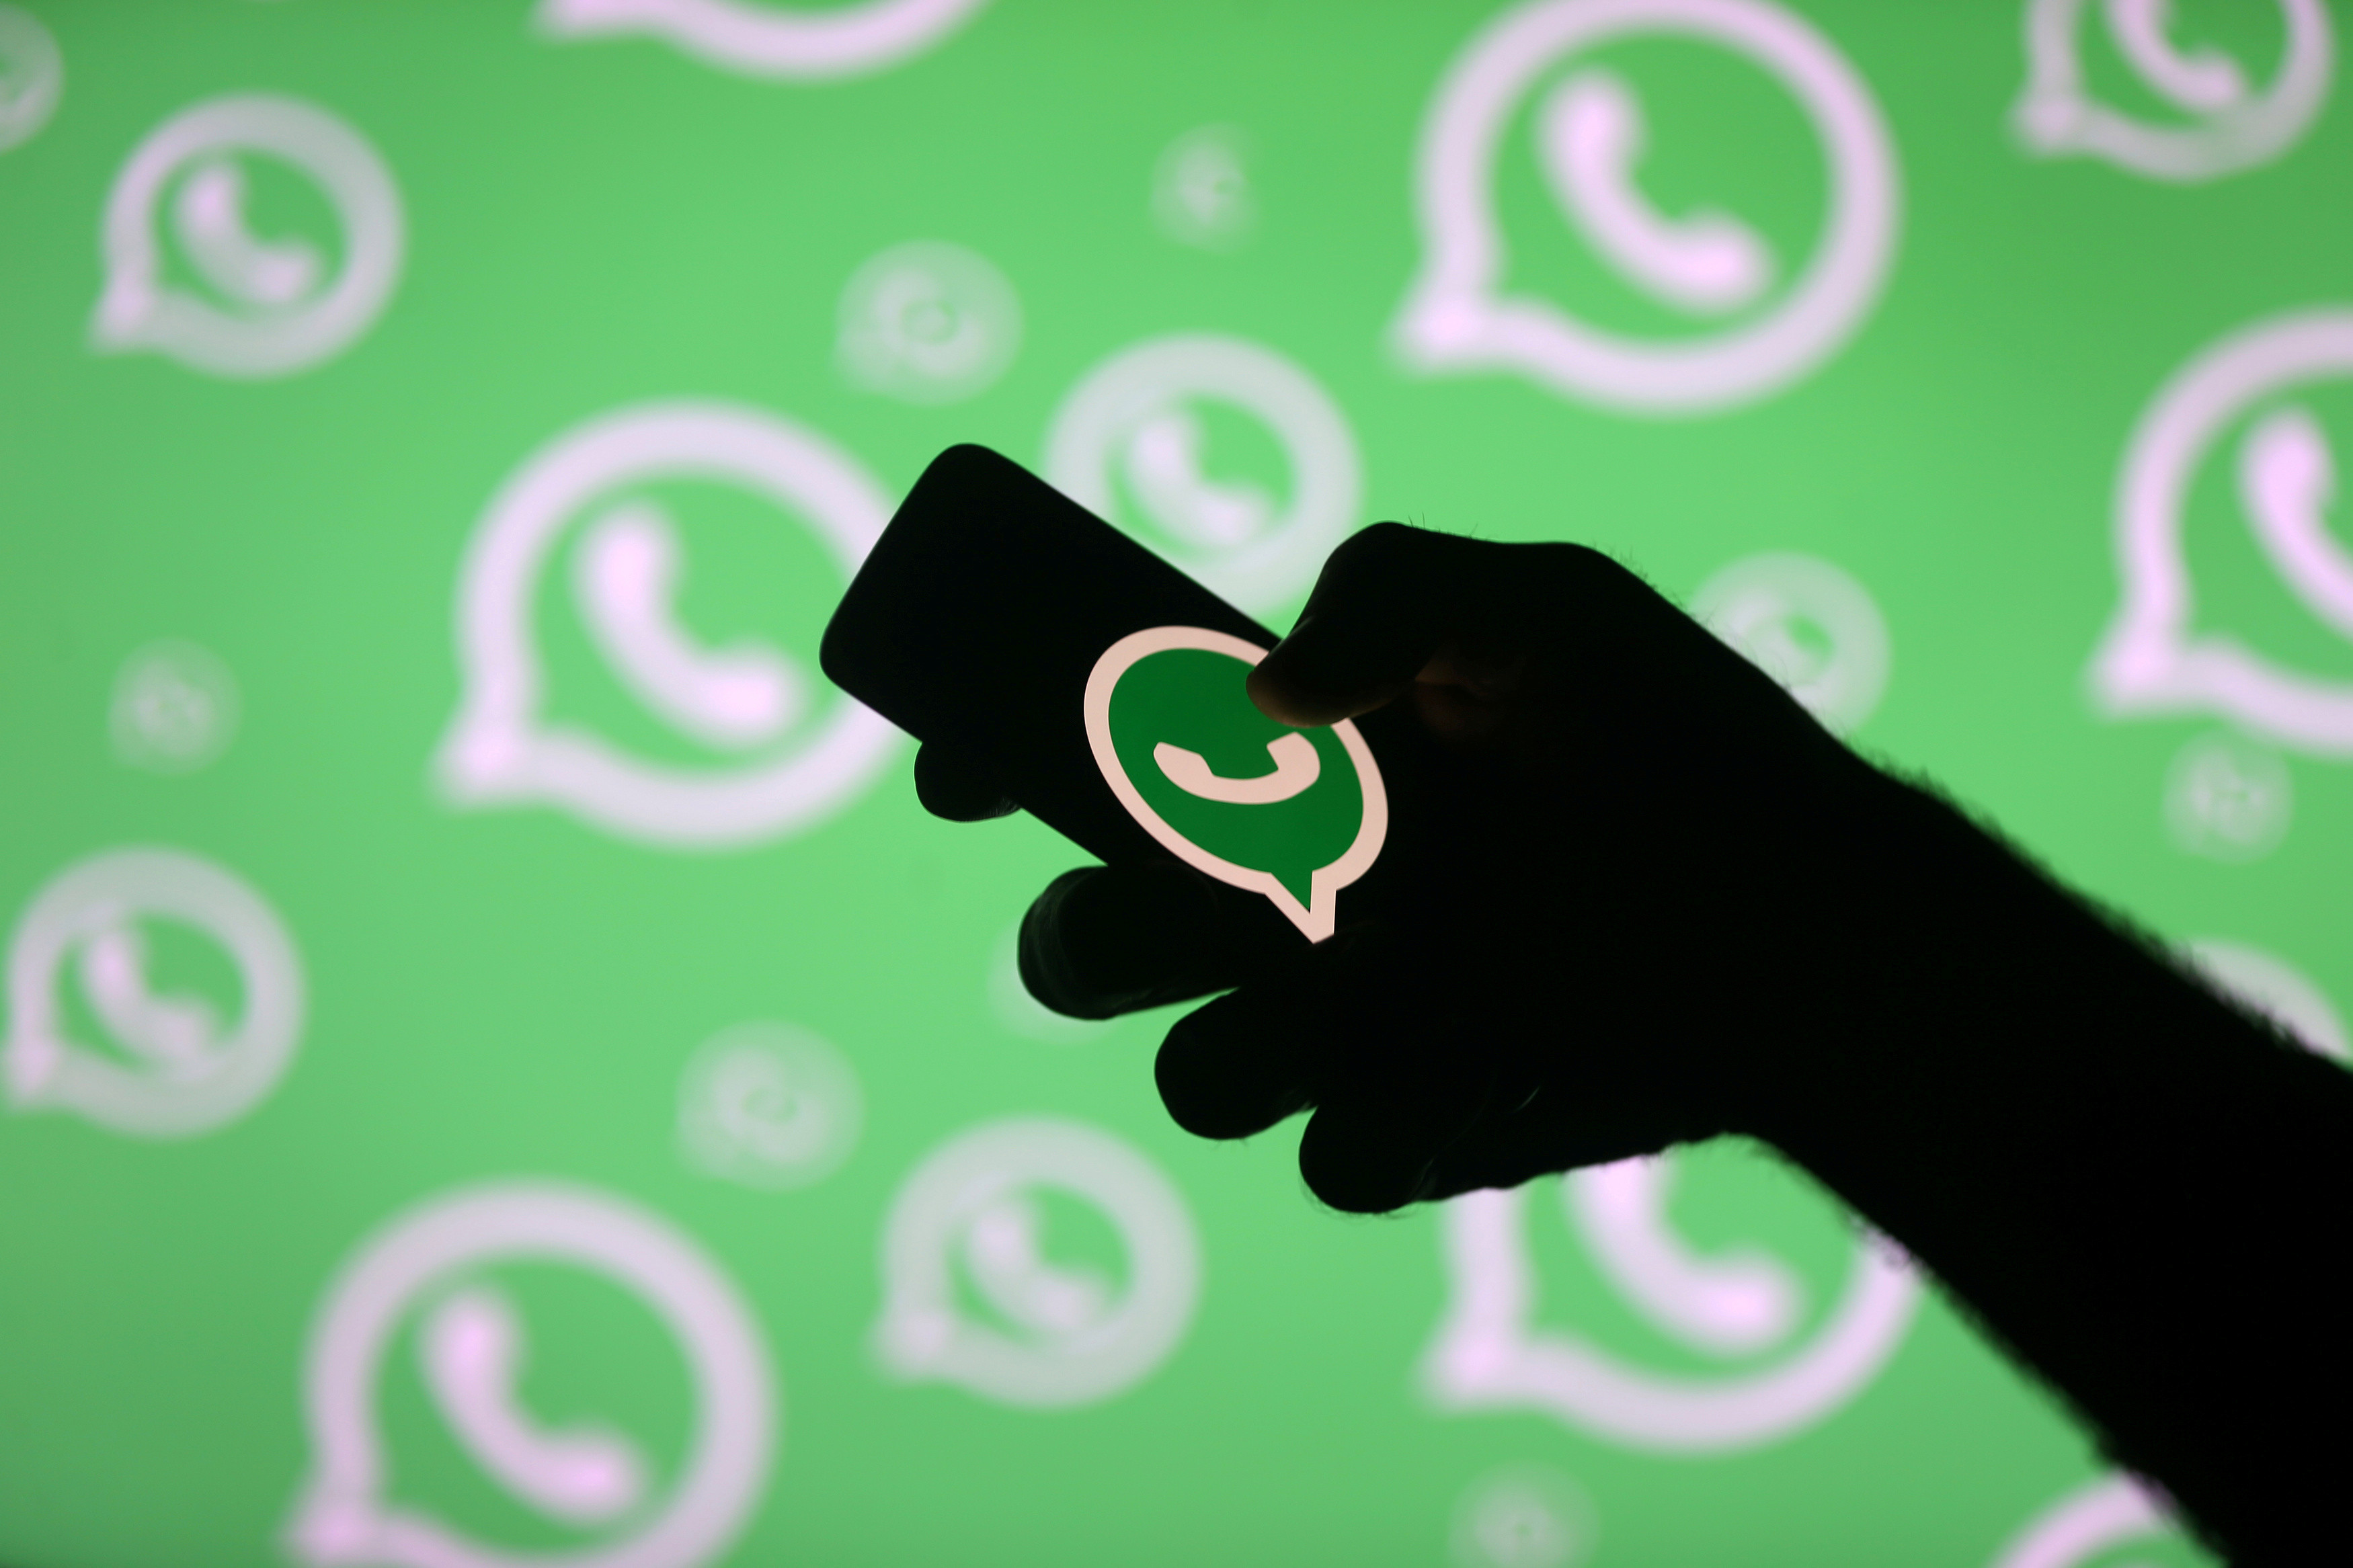   WhatsApp có 1 tỷ người dùng được báo cáo trên toàn thế giới